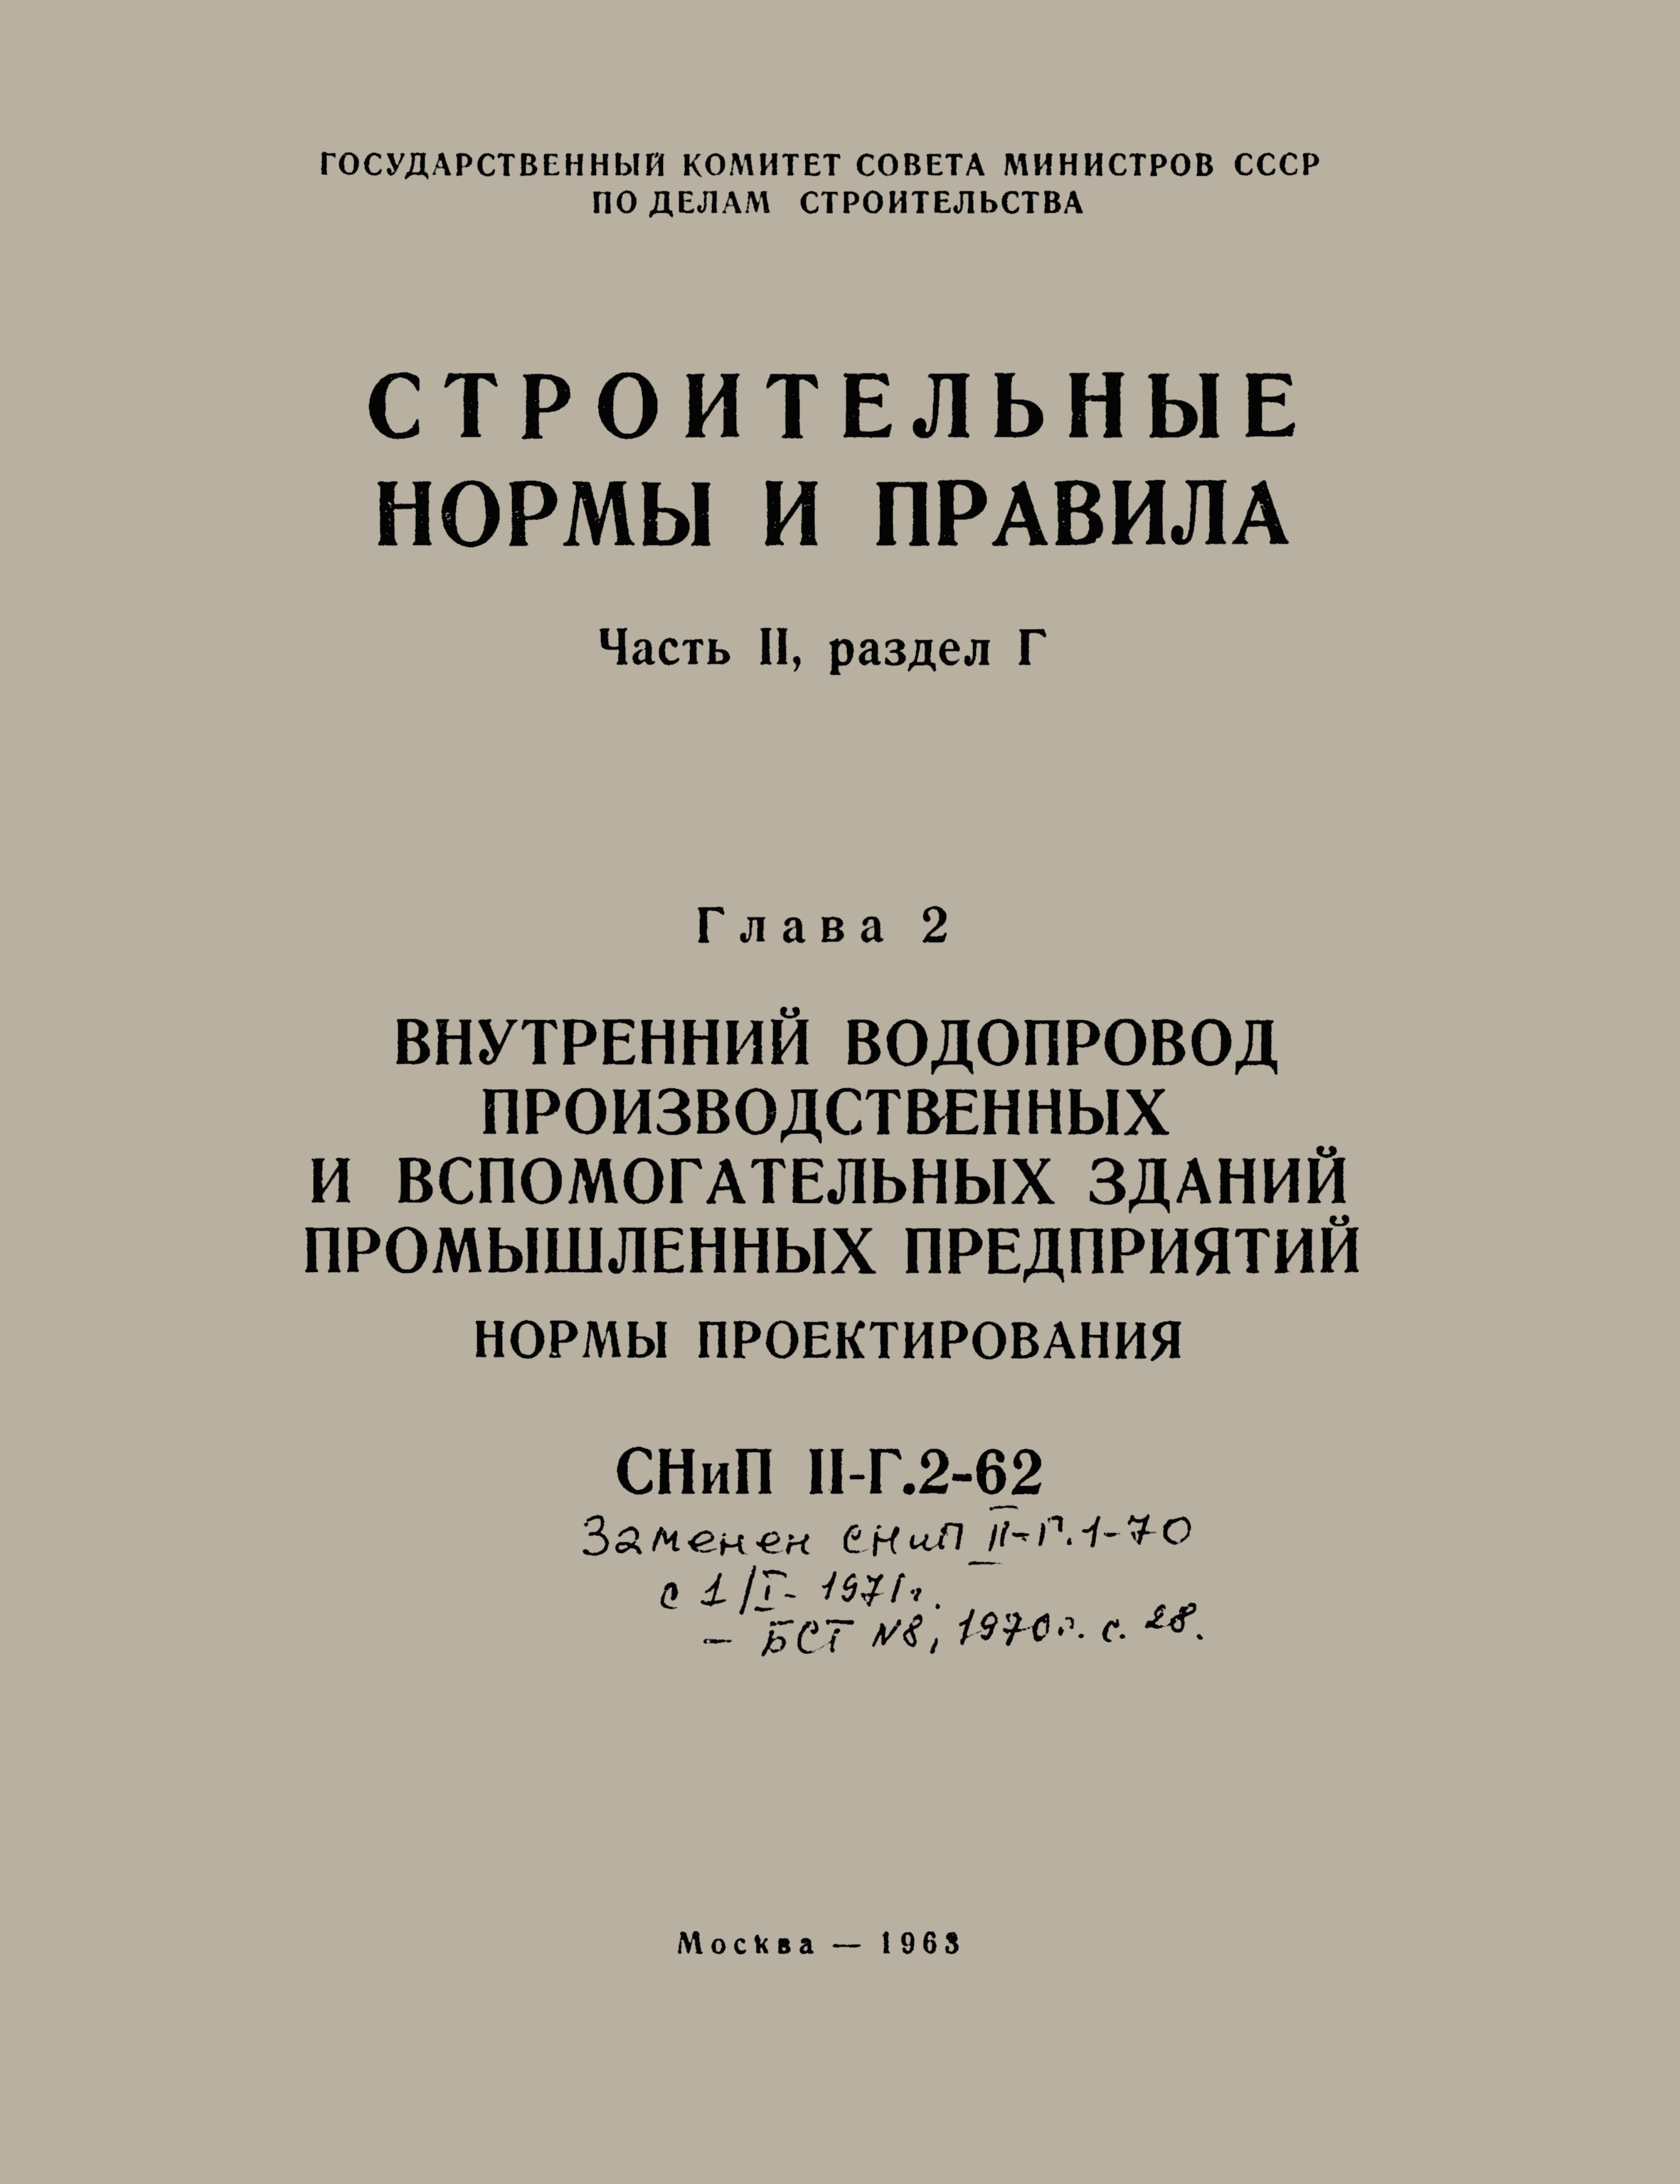 СНиП II-Г.2-62